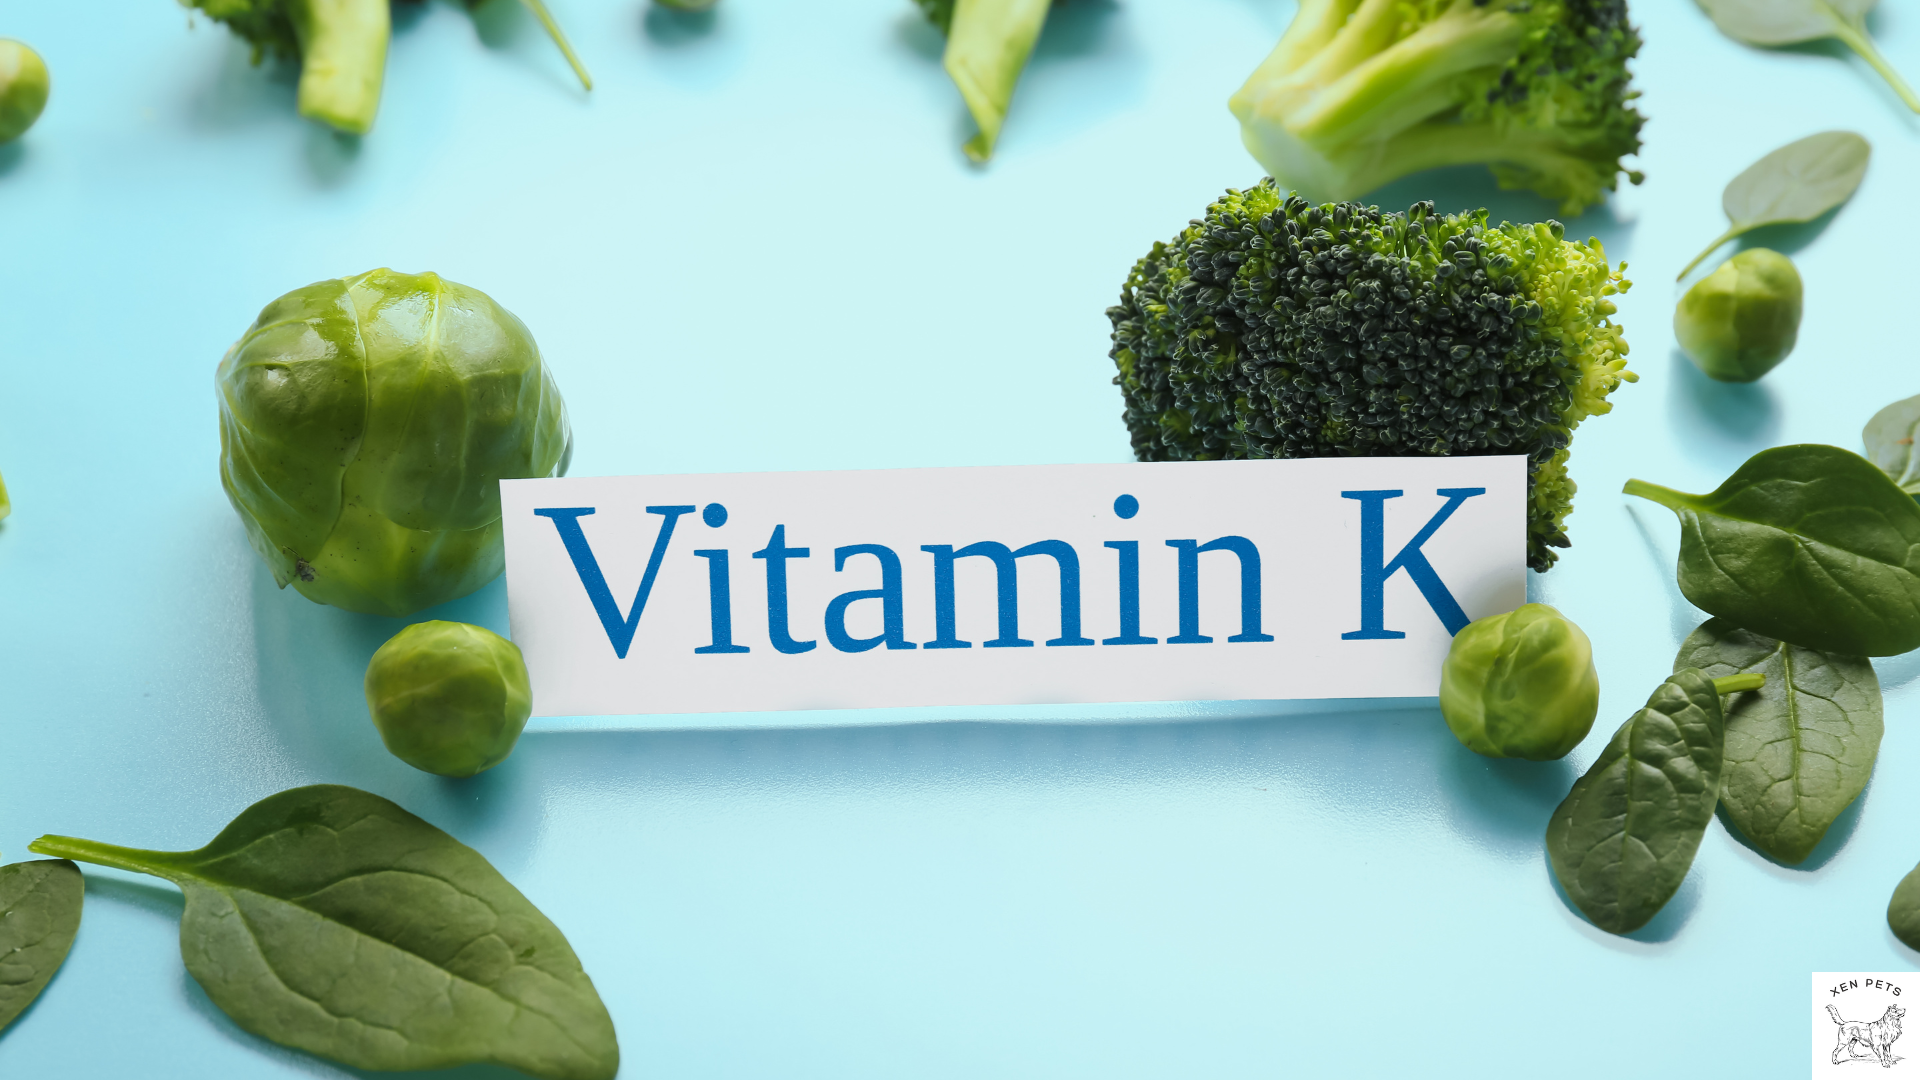 Vitamin K found in broccoli and spinach